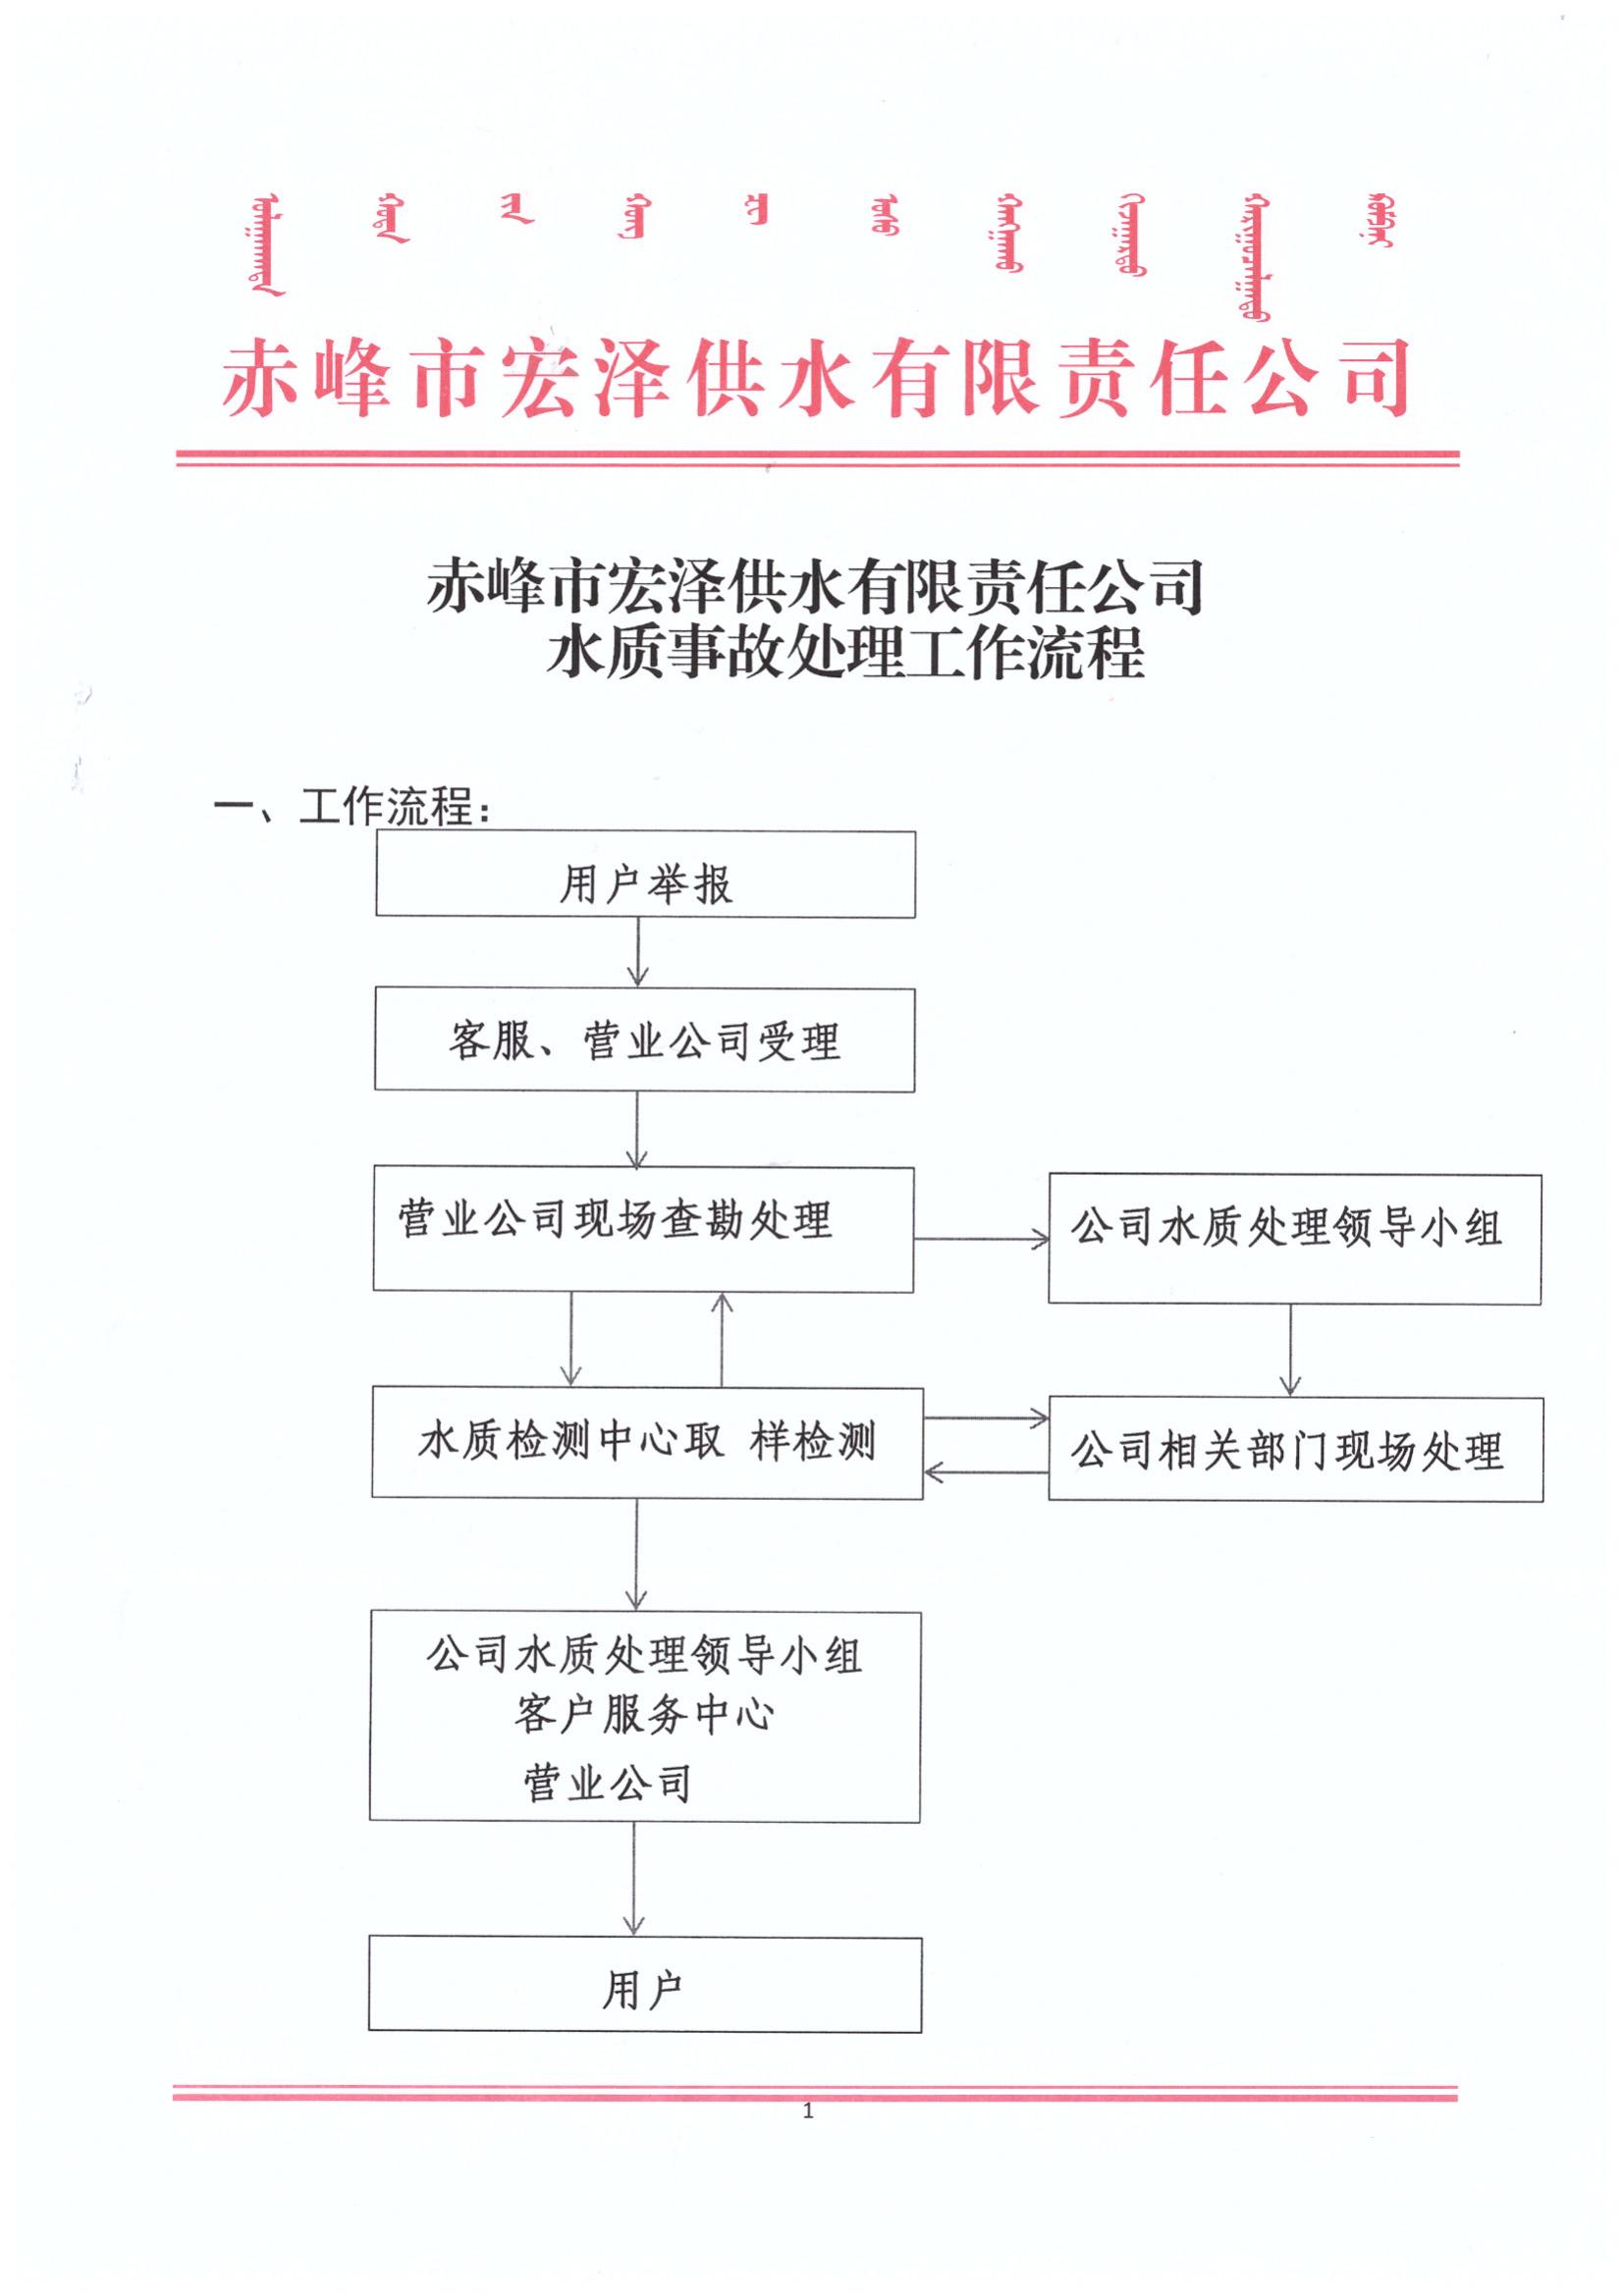 赤峰市宏泽供水有限责任公司水质事故处理表工作流程_00.jpg